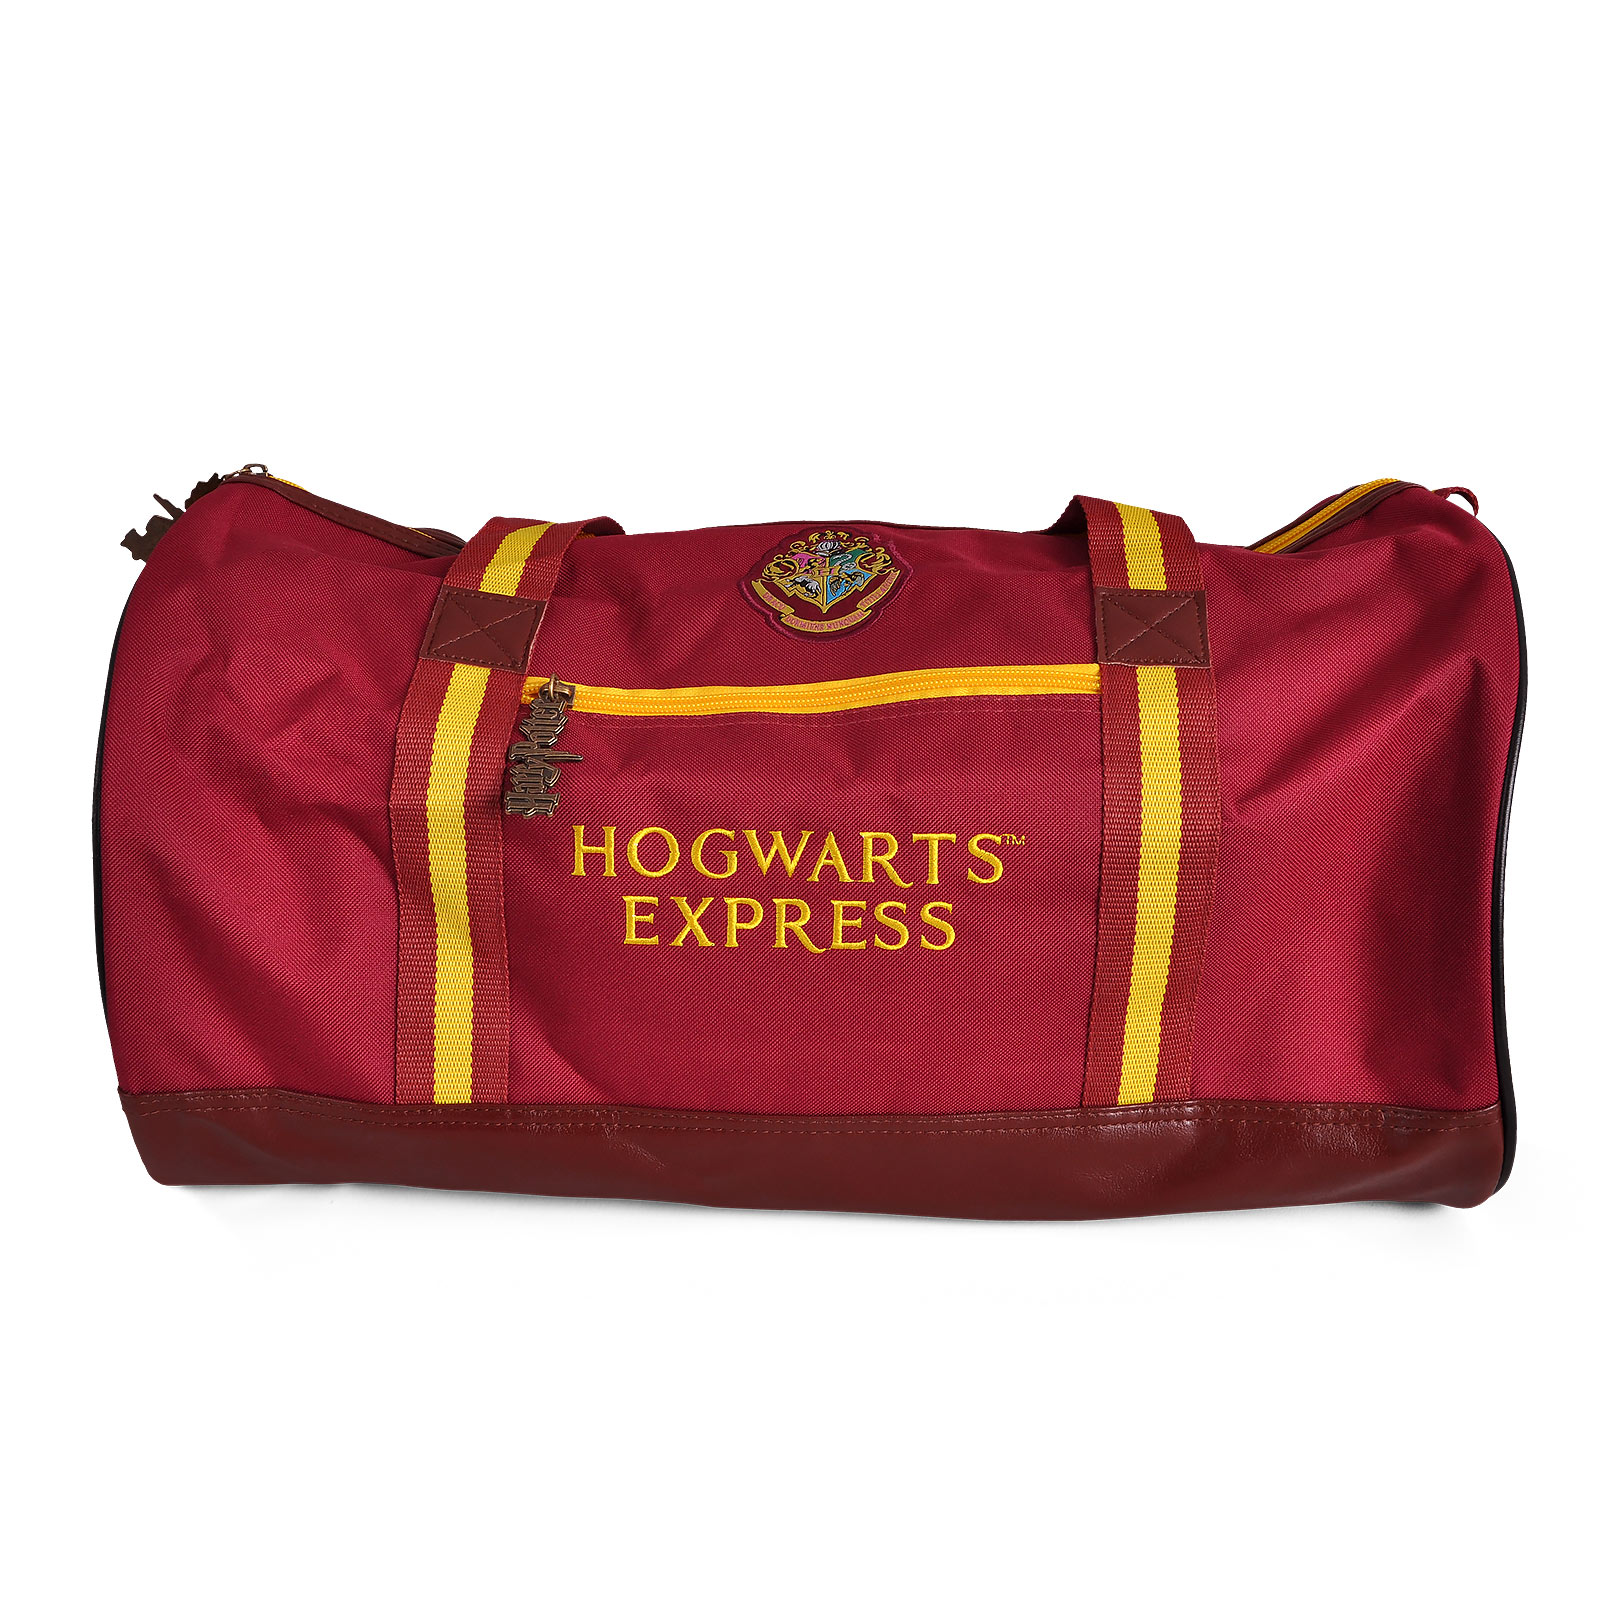 Harry Potter - Hogwarts Express 9 3/4 Travel Bag